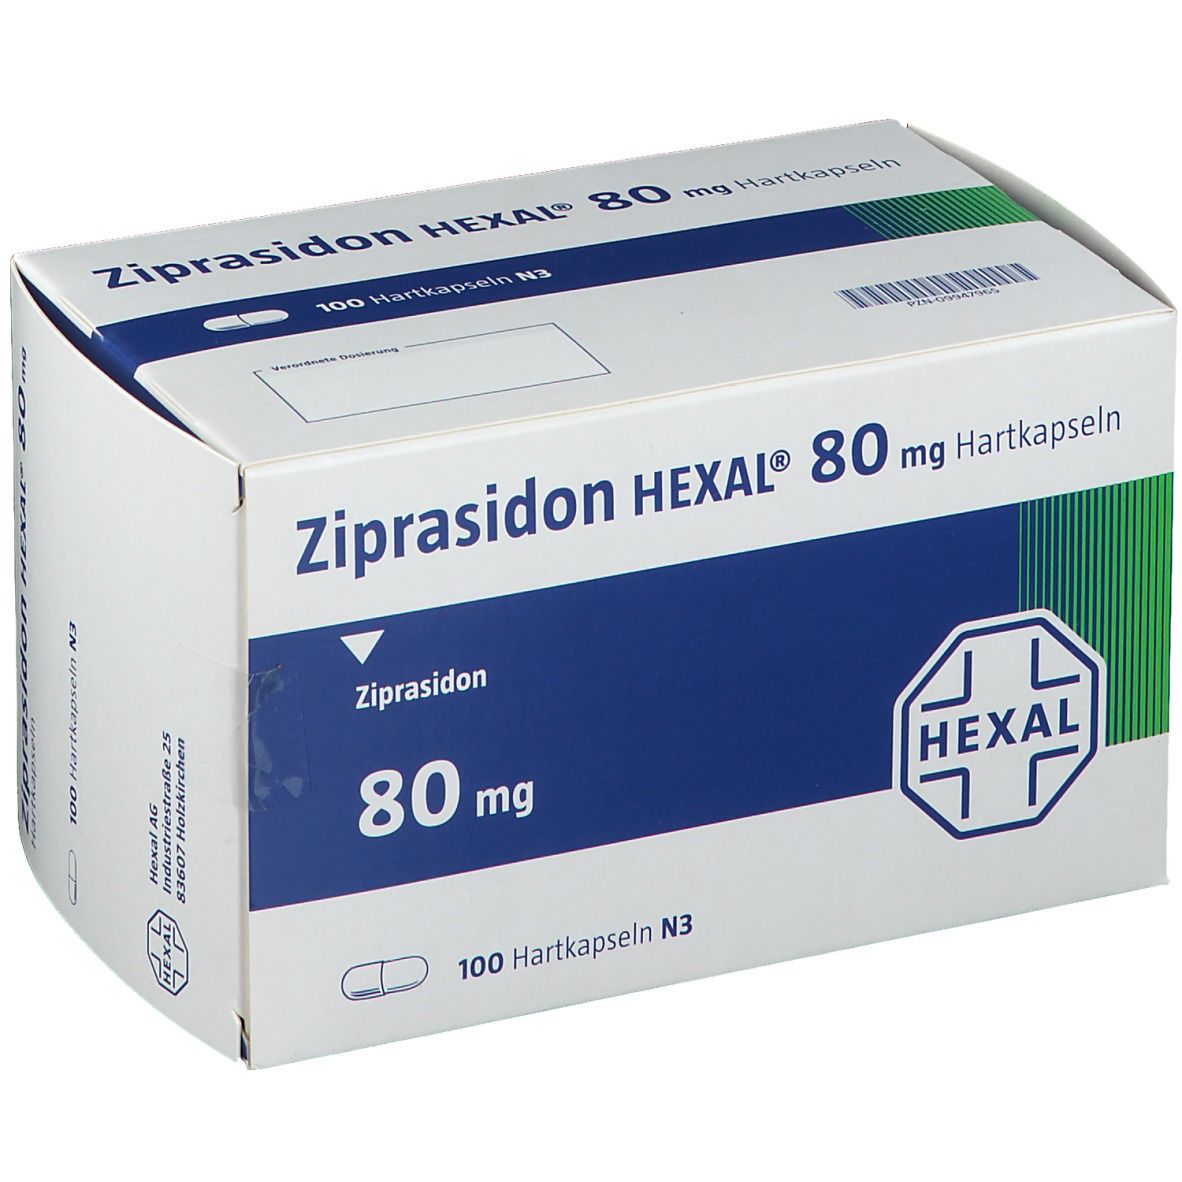 Zipradison HEXAL® 80 mg